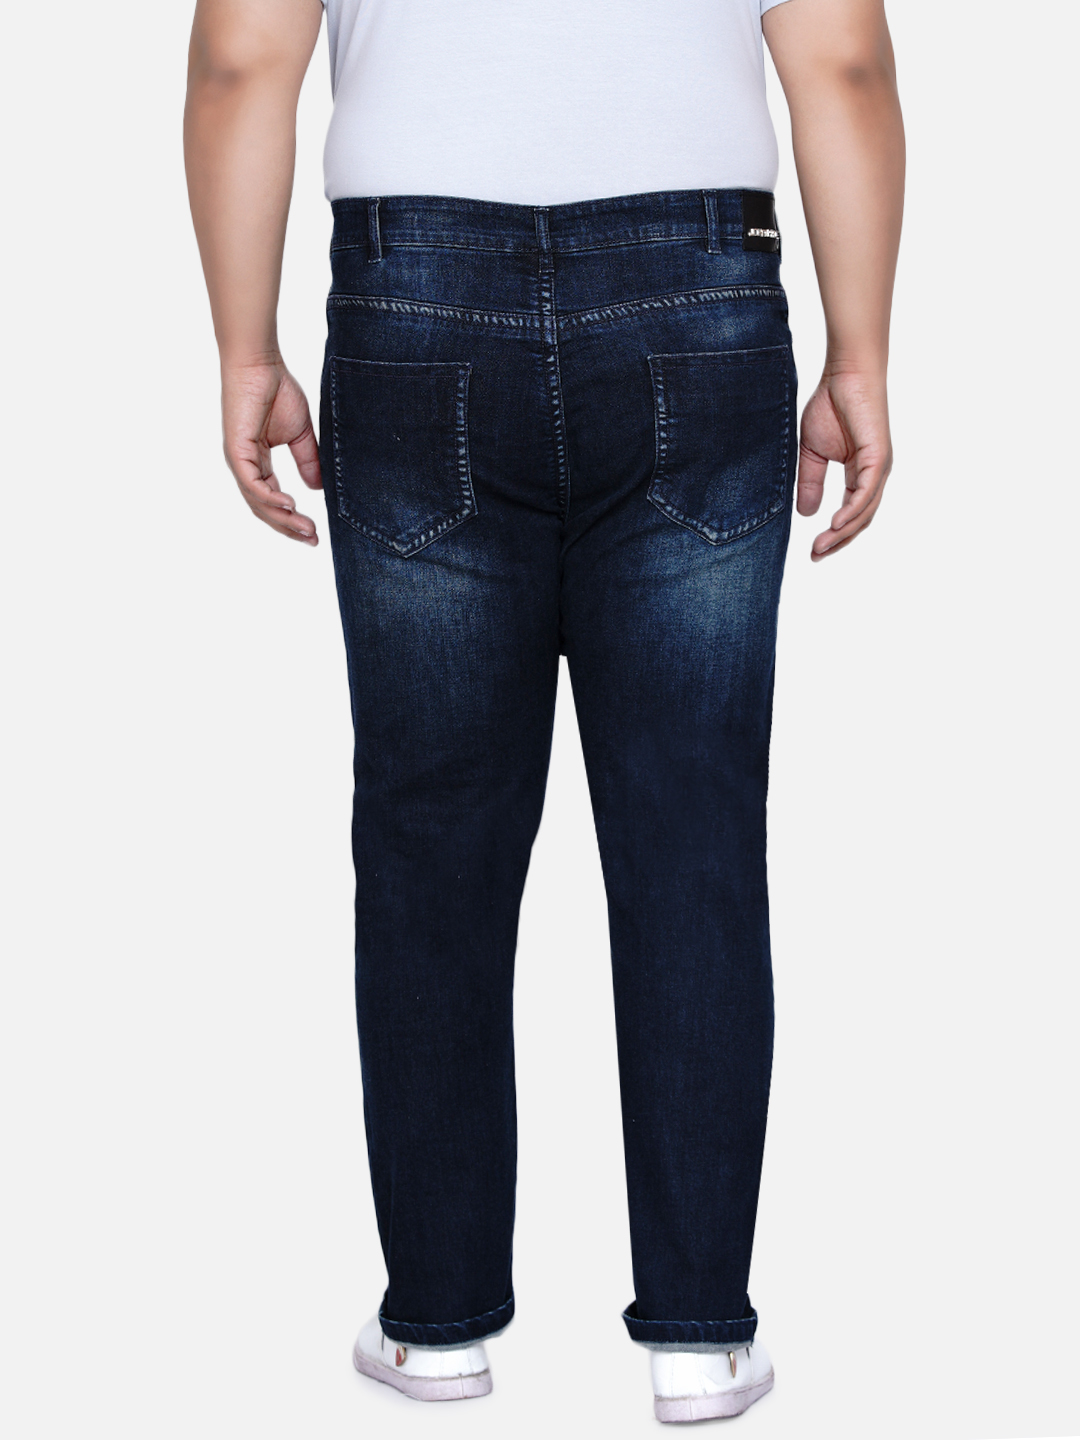 bottomwear/jeans/JPJ6030/jpj6030-6.jpg